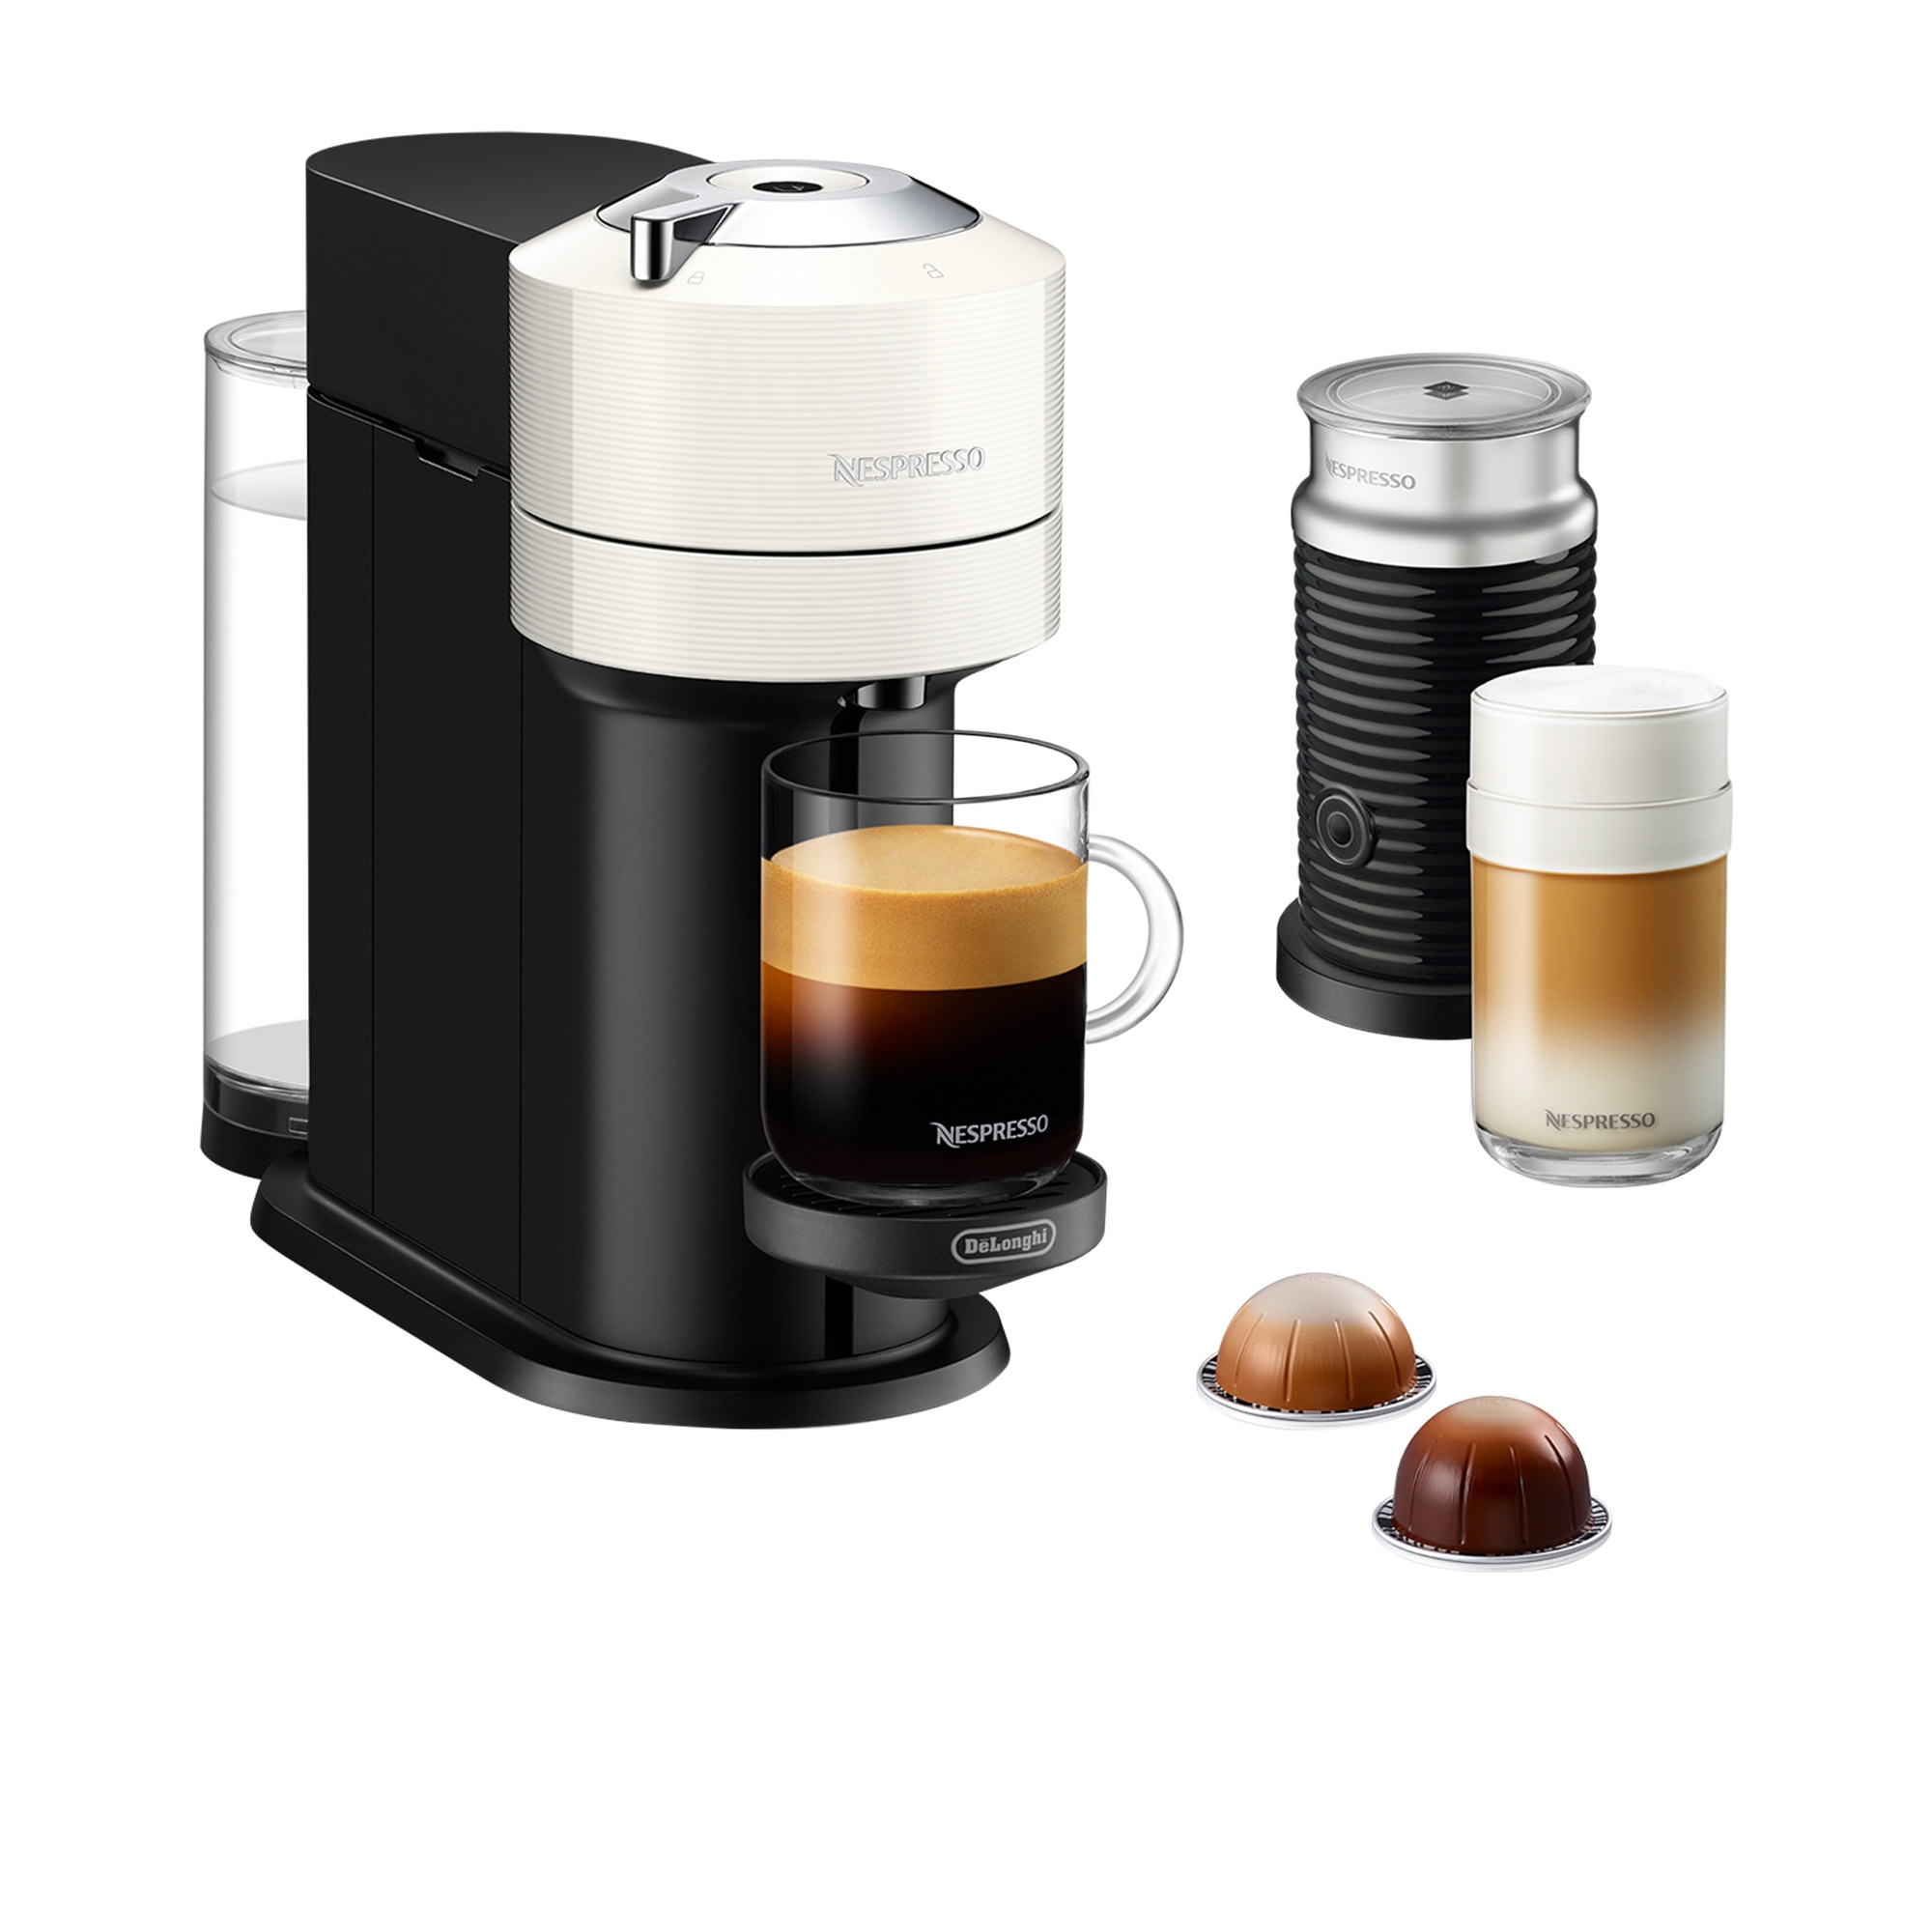 DeLonghi Nespresso Vertuo Next ENV120WAE Coffee Machine White Image 2